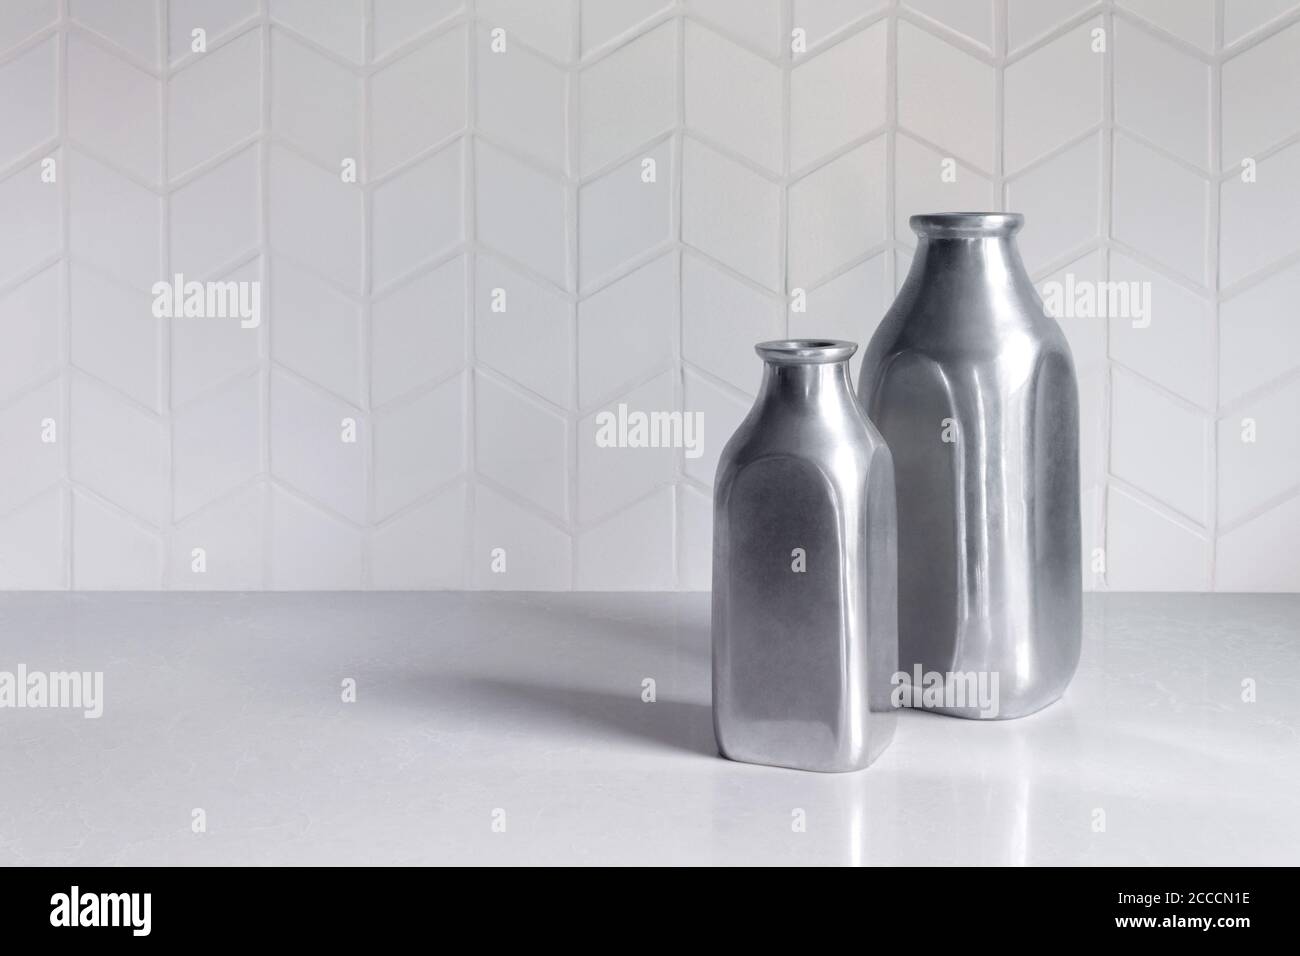 due bottiglie o vasi vuoti in metallo color argento su un contatore bianco con un motivo in tegola chevron bianco con spazio di copia Foto Stock